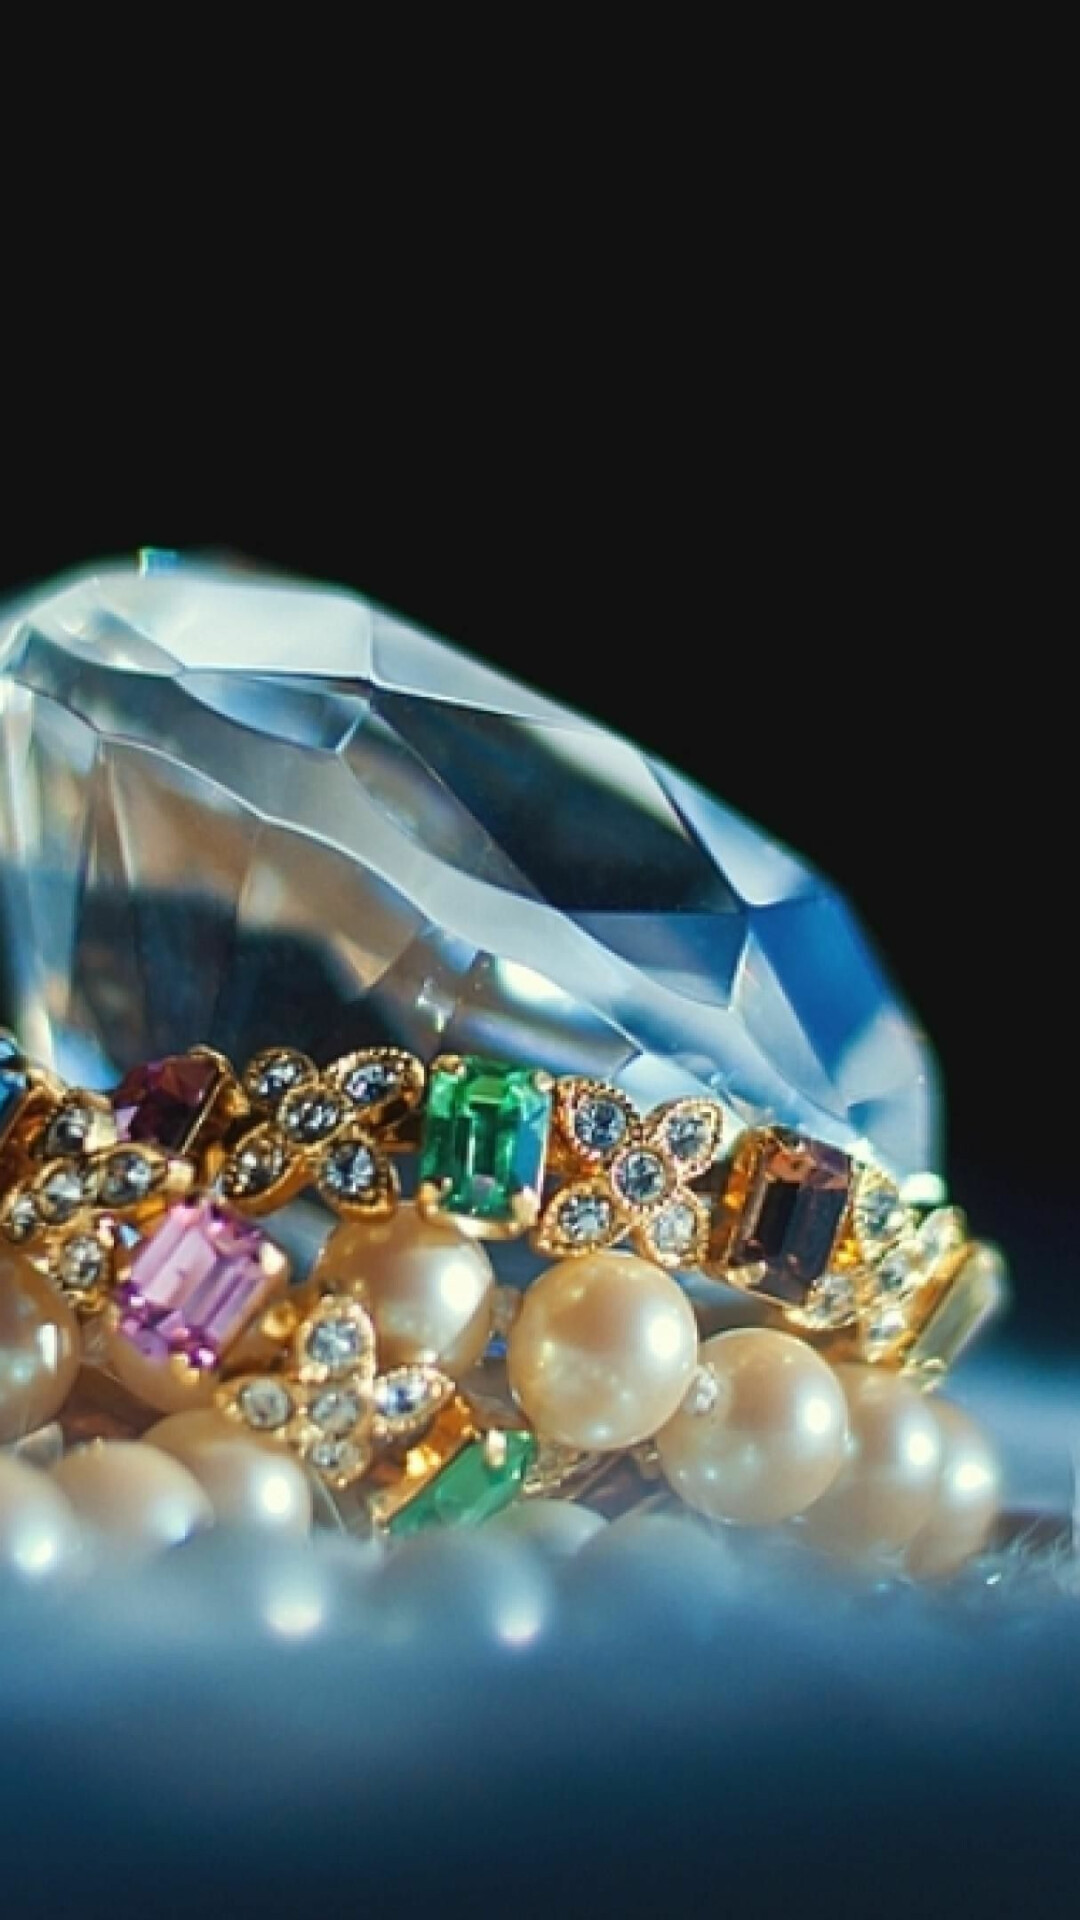 Jewels: Gemstone, Rare minerals, A piece of mineral crystal. 1080x1920 Full HD Wallpaper.